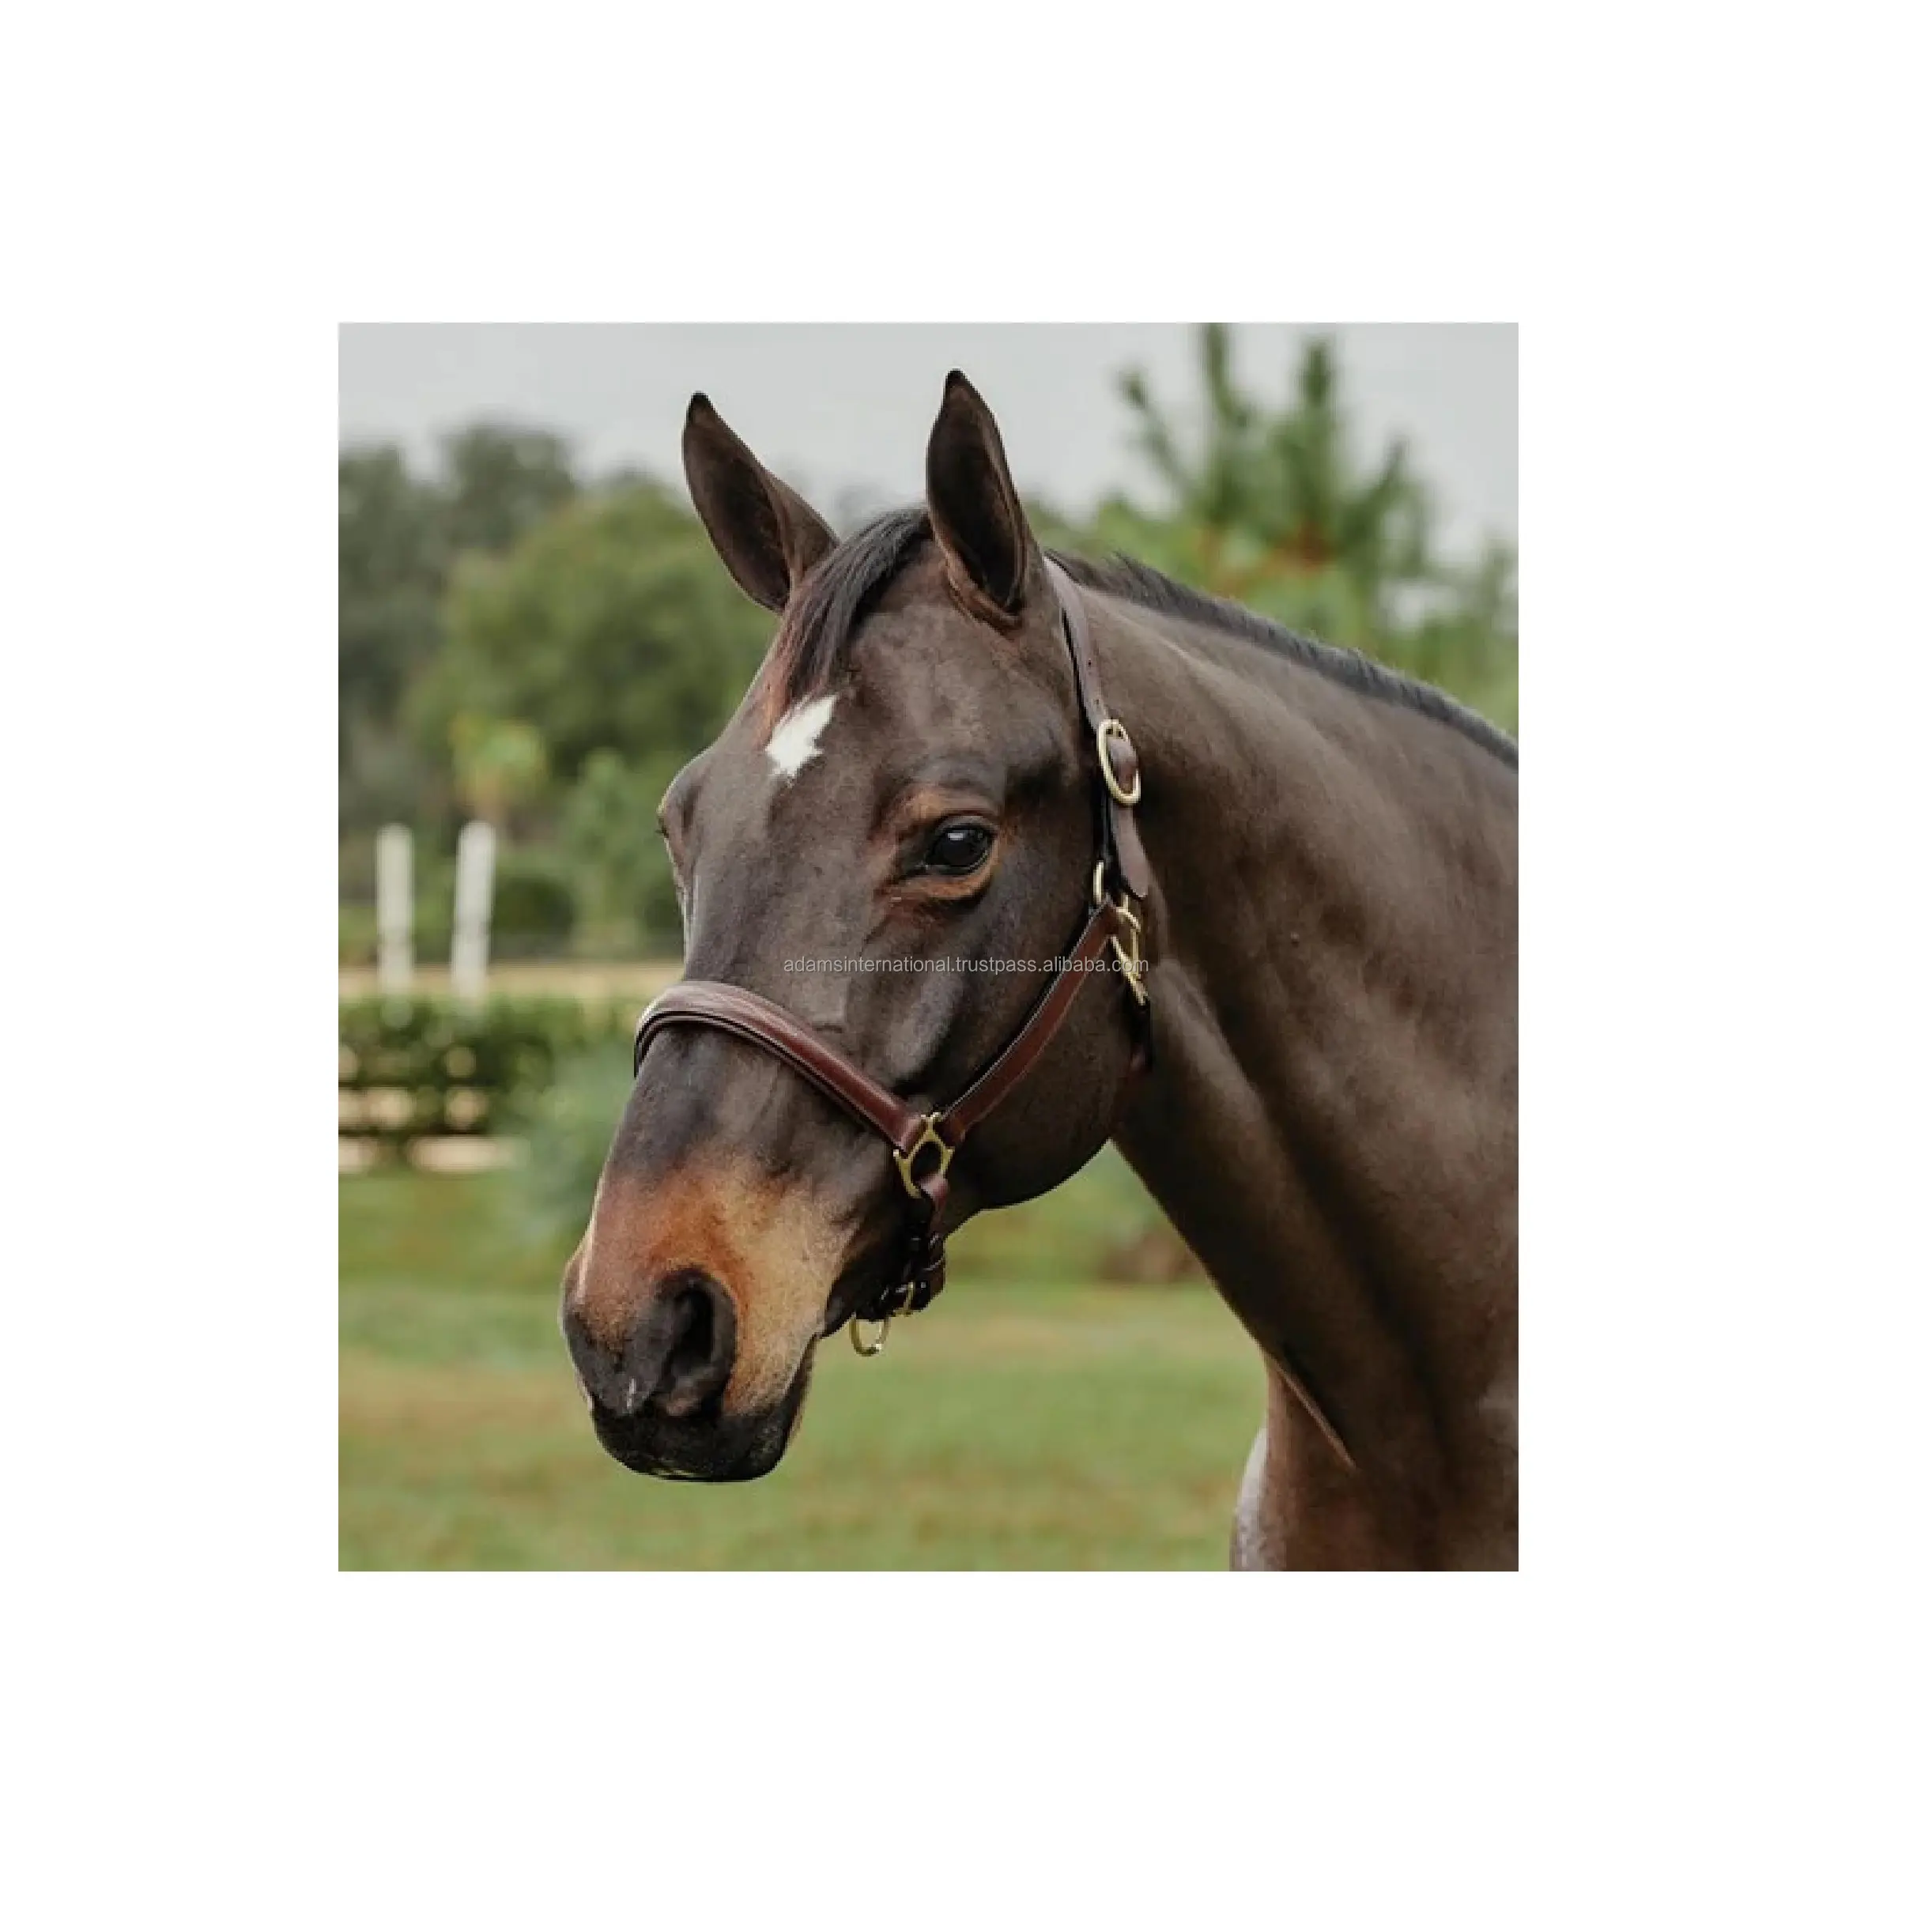 نوعية ممتازة جلد الحصان الرسن مع لينة الحشو في البني اللون الحصان معدات ركوب الخيل تاجر الجملة الصانع